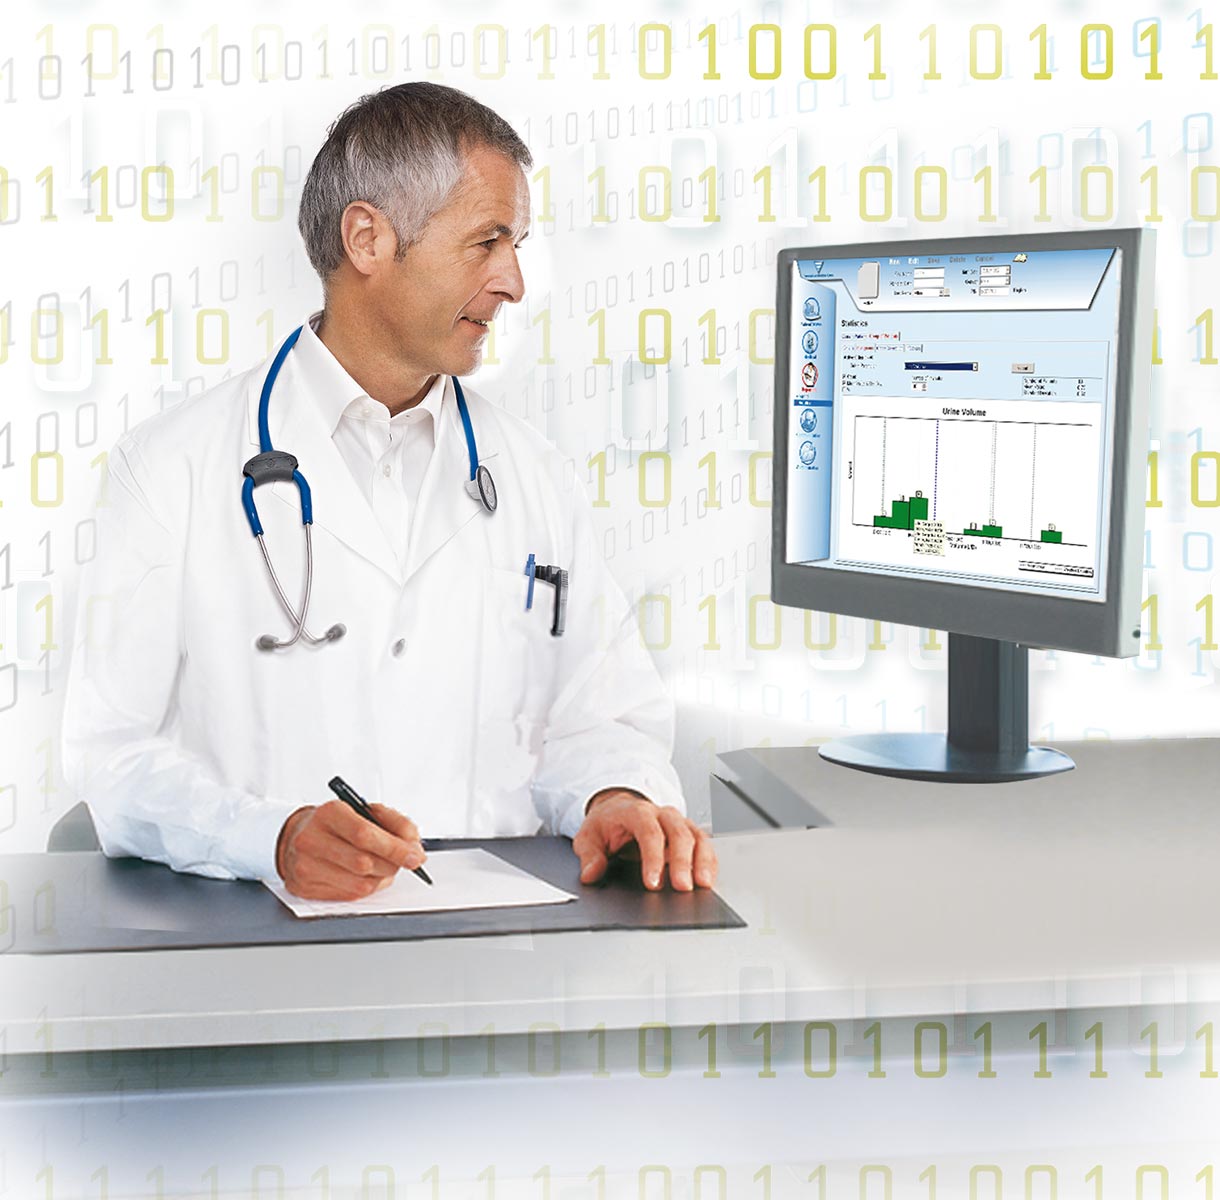 Physician looking at monitor data